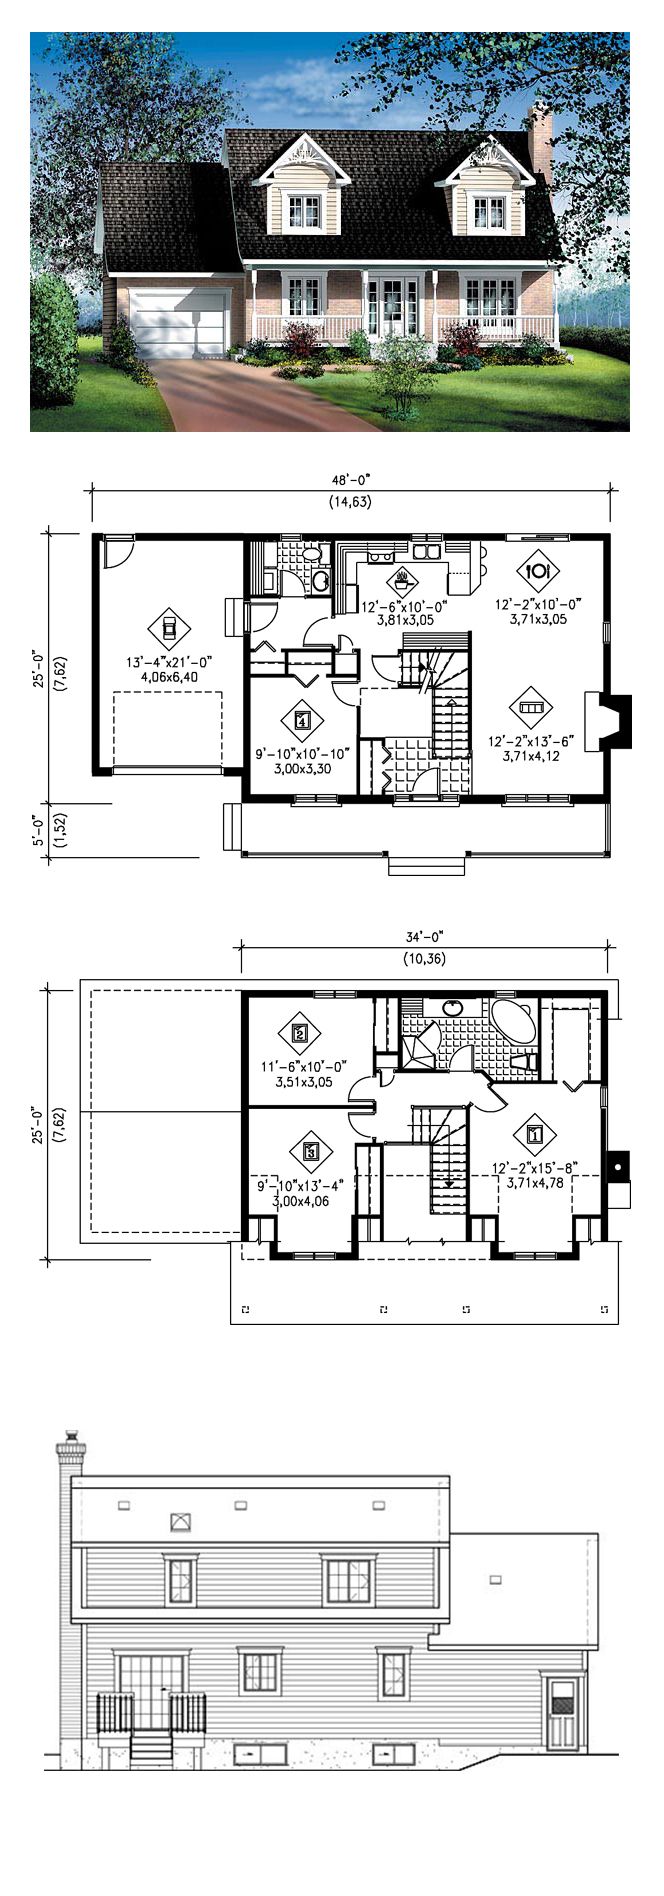 Plans Maison En Photos 2018 Cape Cod House Plan 49687